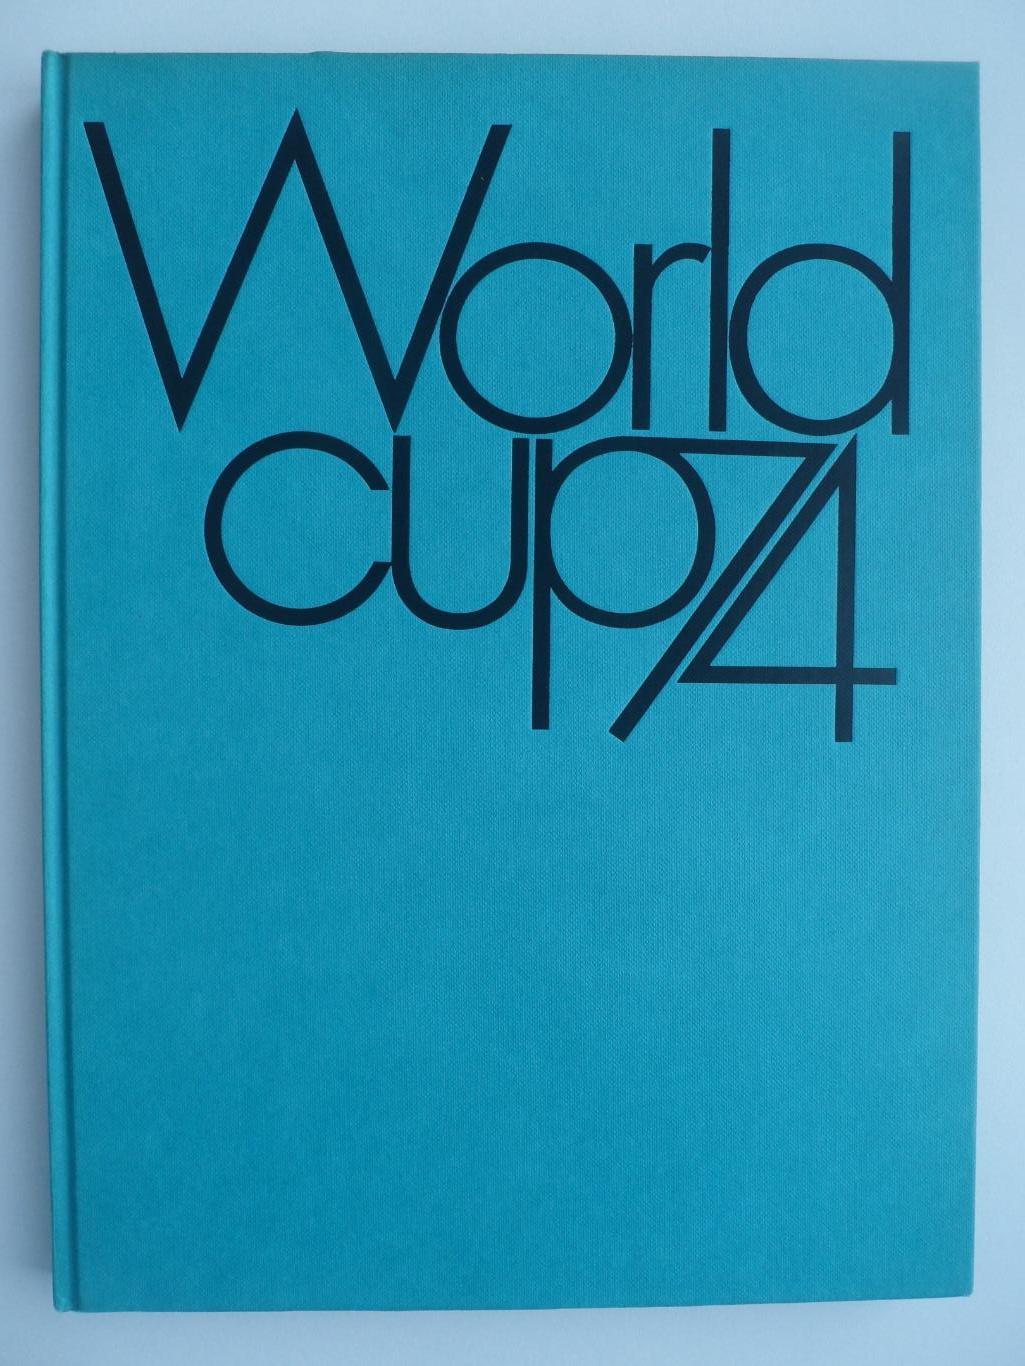 фотоальбом Чемпионат мира по футболу 1974 (208 стр.)